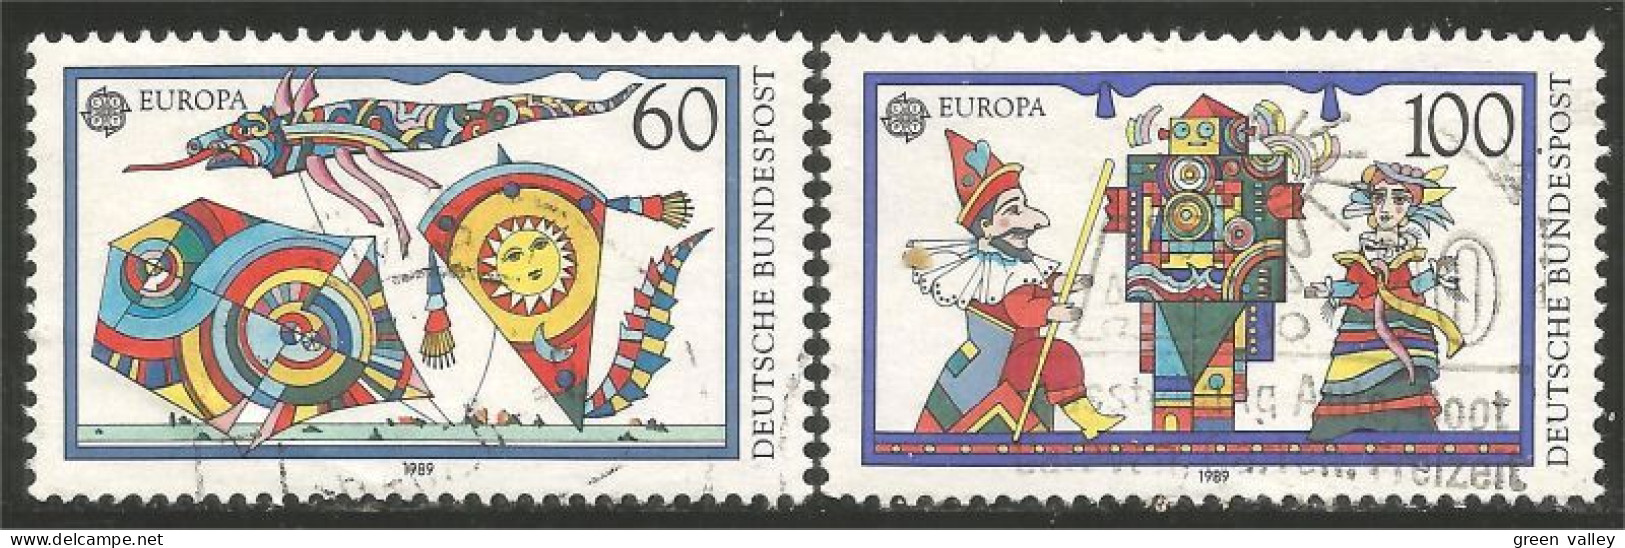 EU89-17b EUROPA-CEPT 1989 Germany Jeux Enfants Children Games Kinderspiele - Unclassified